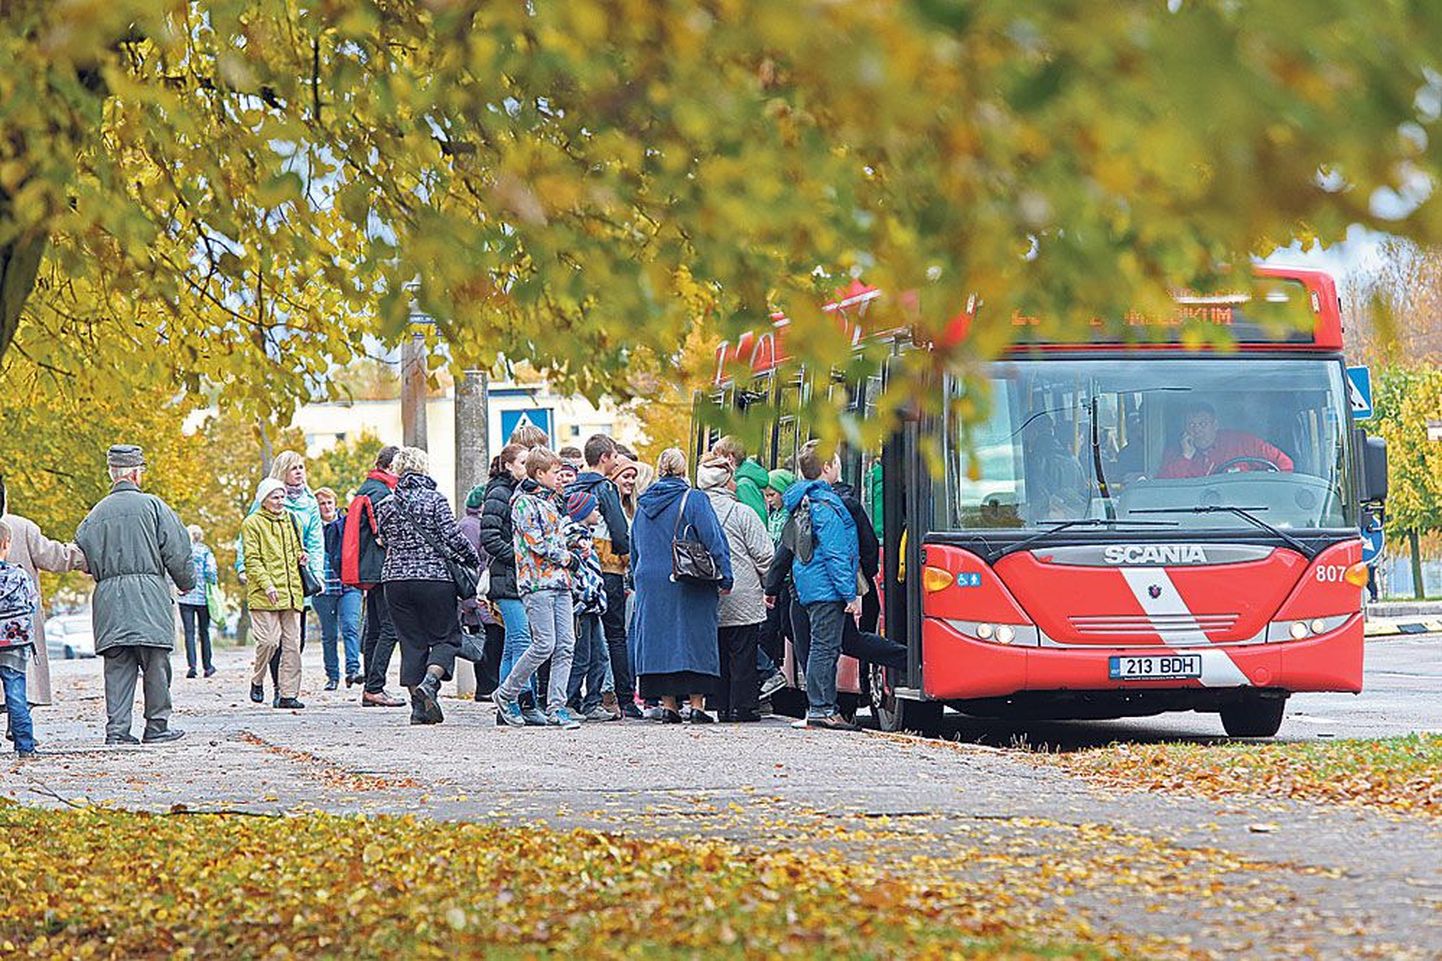 Eile lõuna paiku möödus Annelinna gümnaasiumi peatuses Kaunase puiesteel bussi sisenemine ja väljumine õnneks rahulikult. Bussijuhid on kogenud aga ka hoopis ärevamaid hetki.